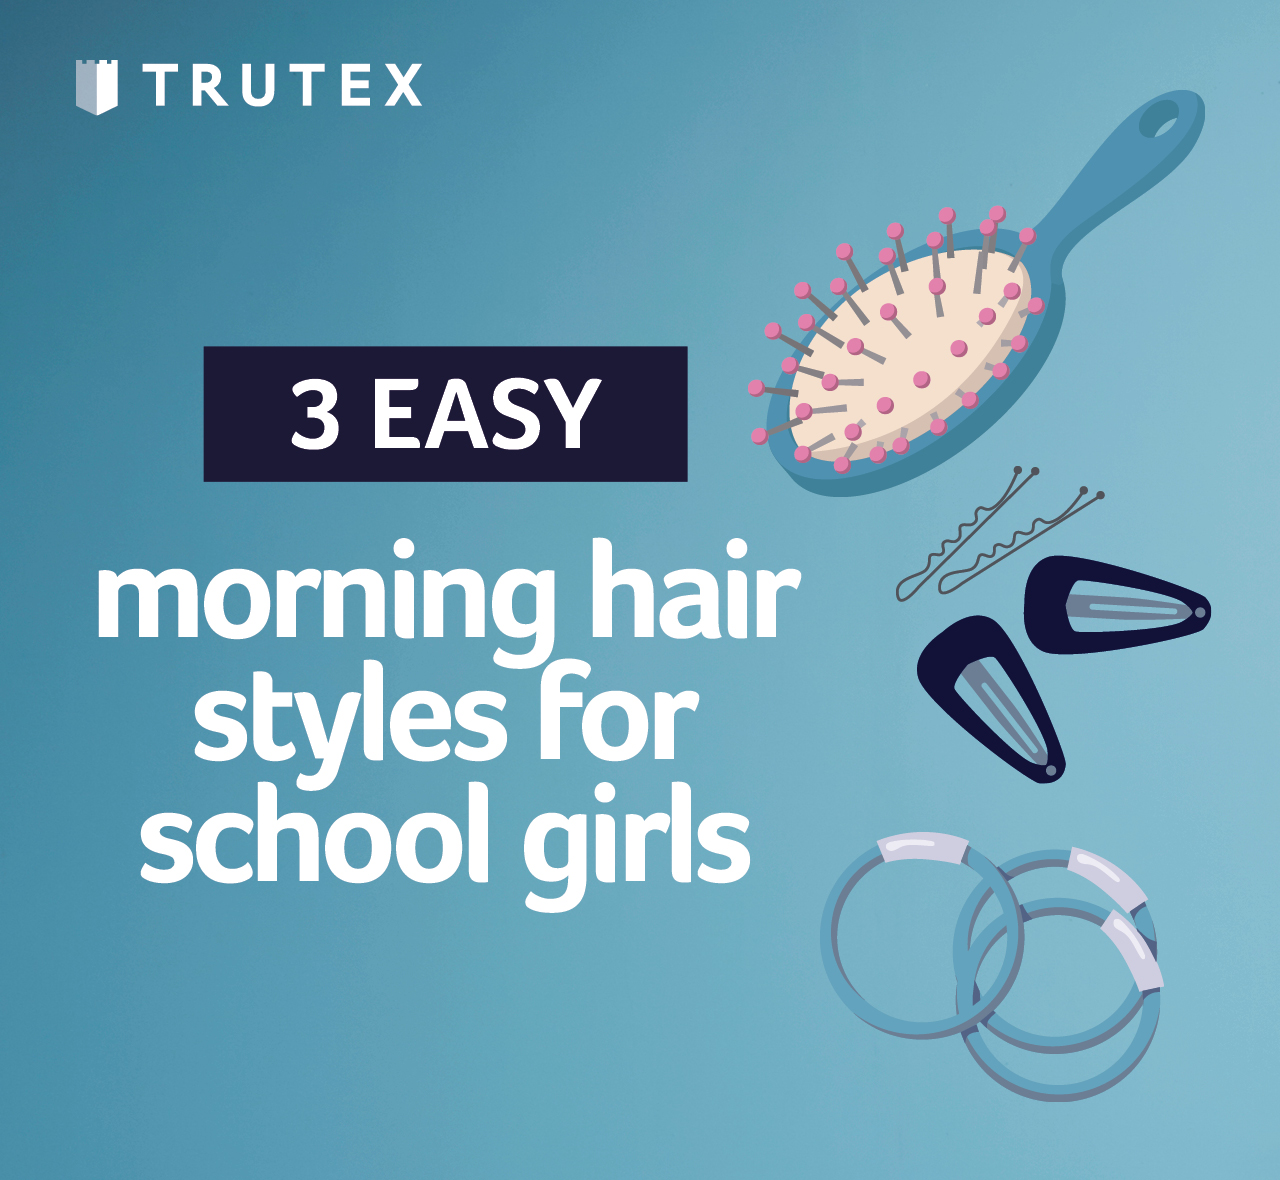 3 easy morning hair styles for school girls